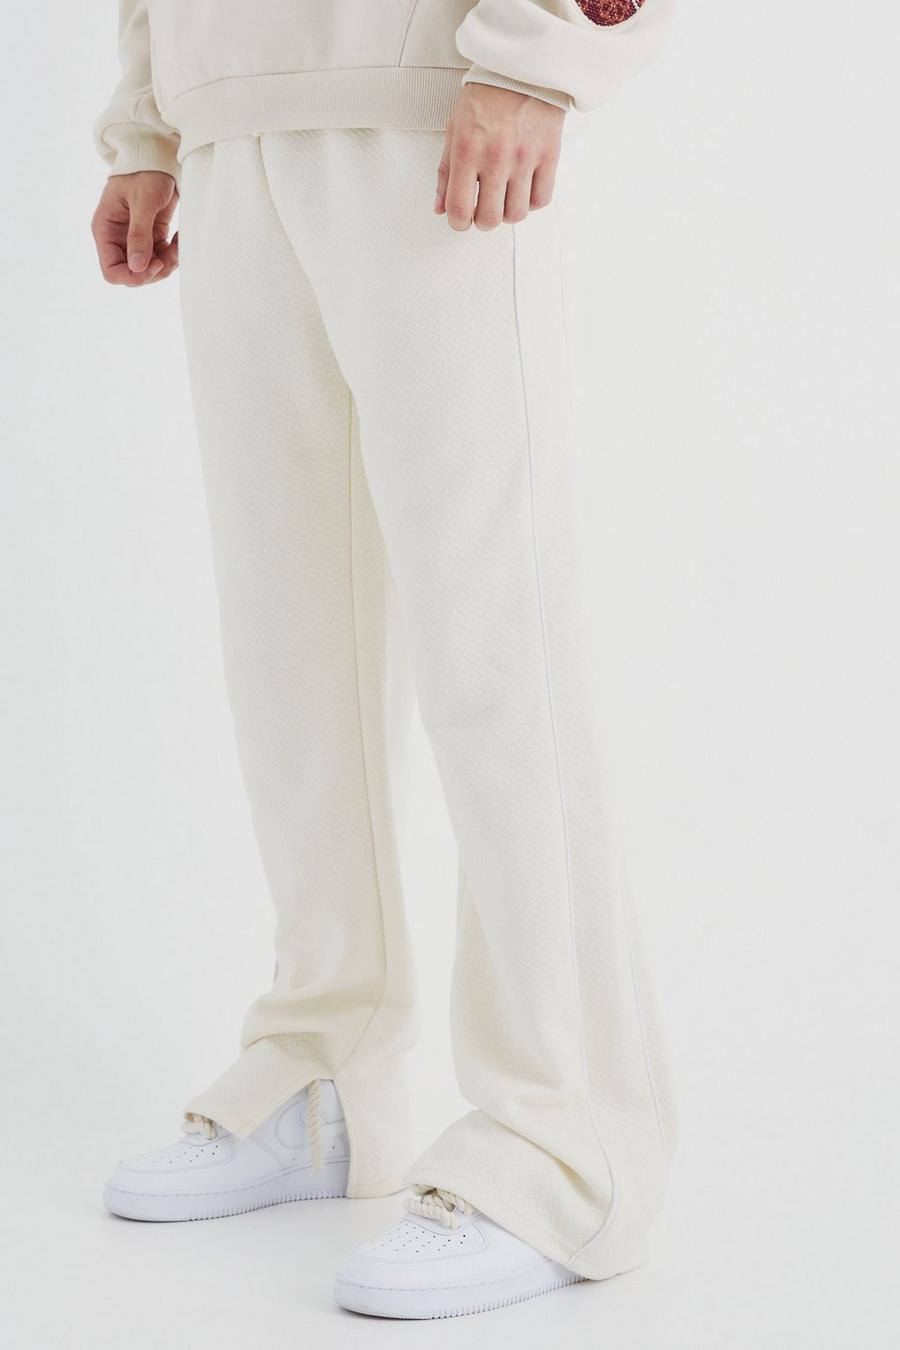 Pantalón deportivo Tall holgado texturizado grueso con abertura en el bajo, Ecru